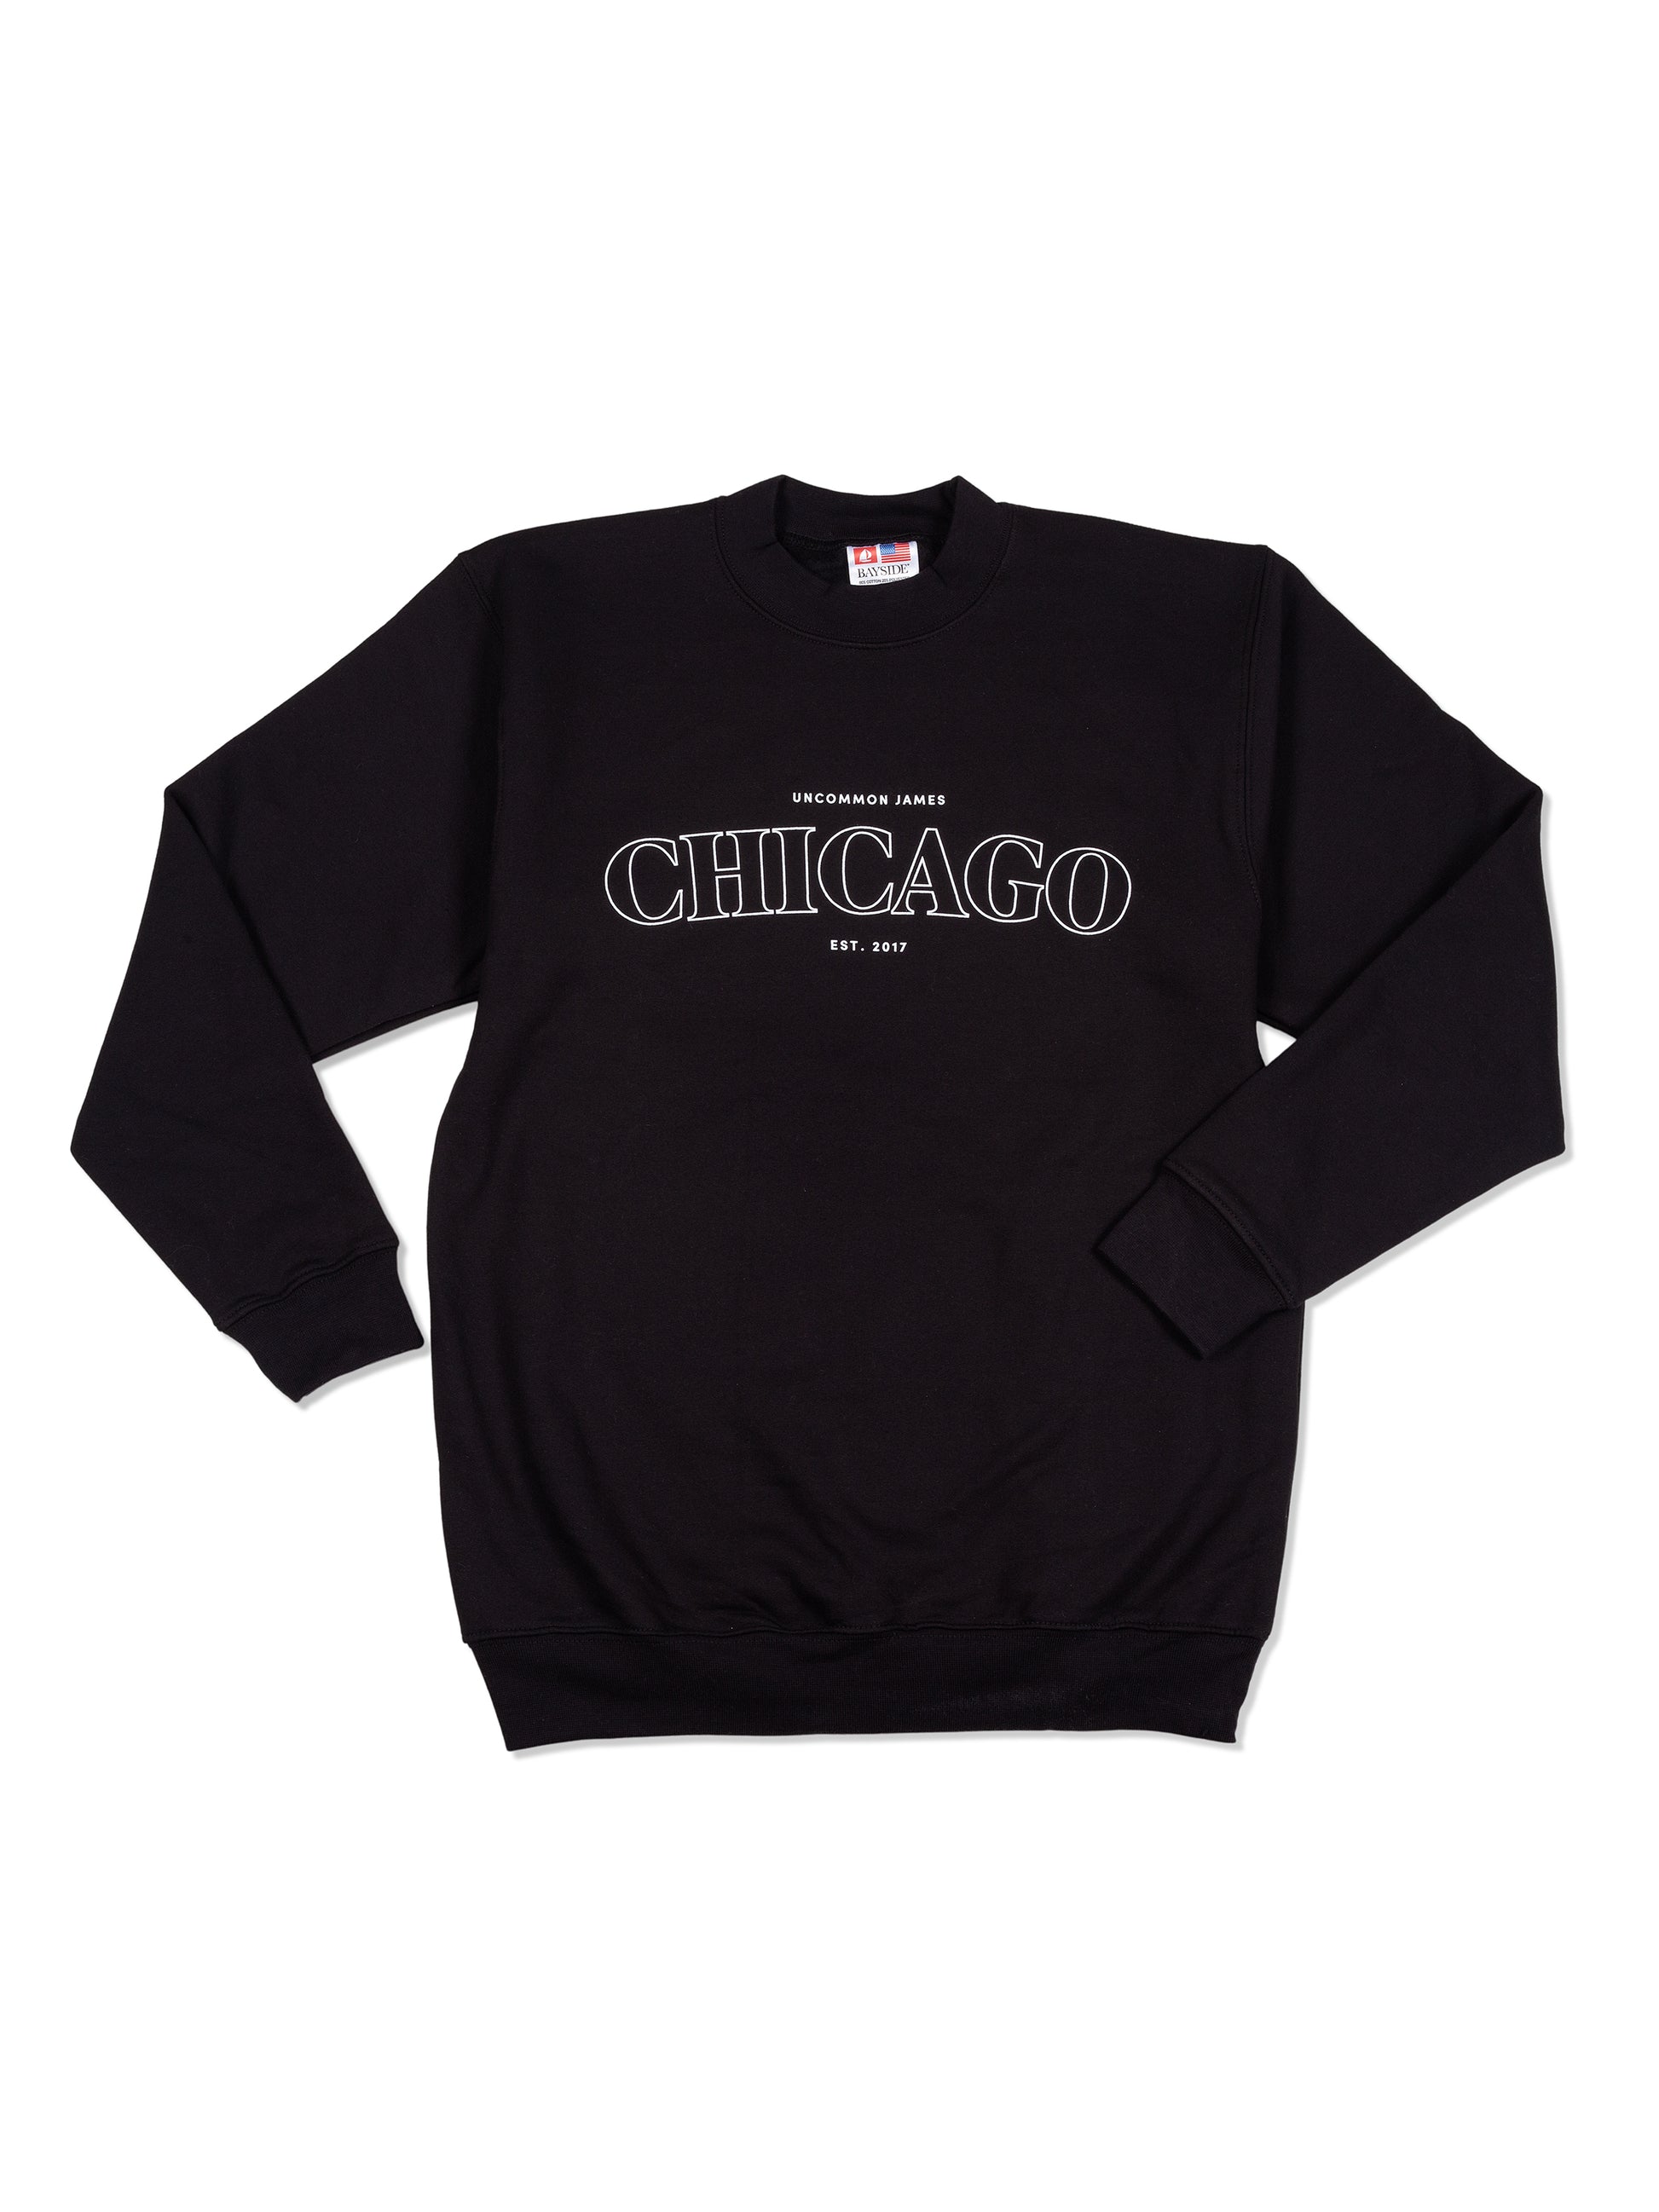 Chicago Sweatshirt | Black | Product Image | Uncommon Lifestyle